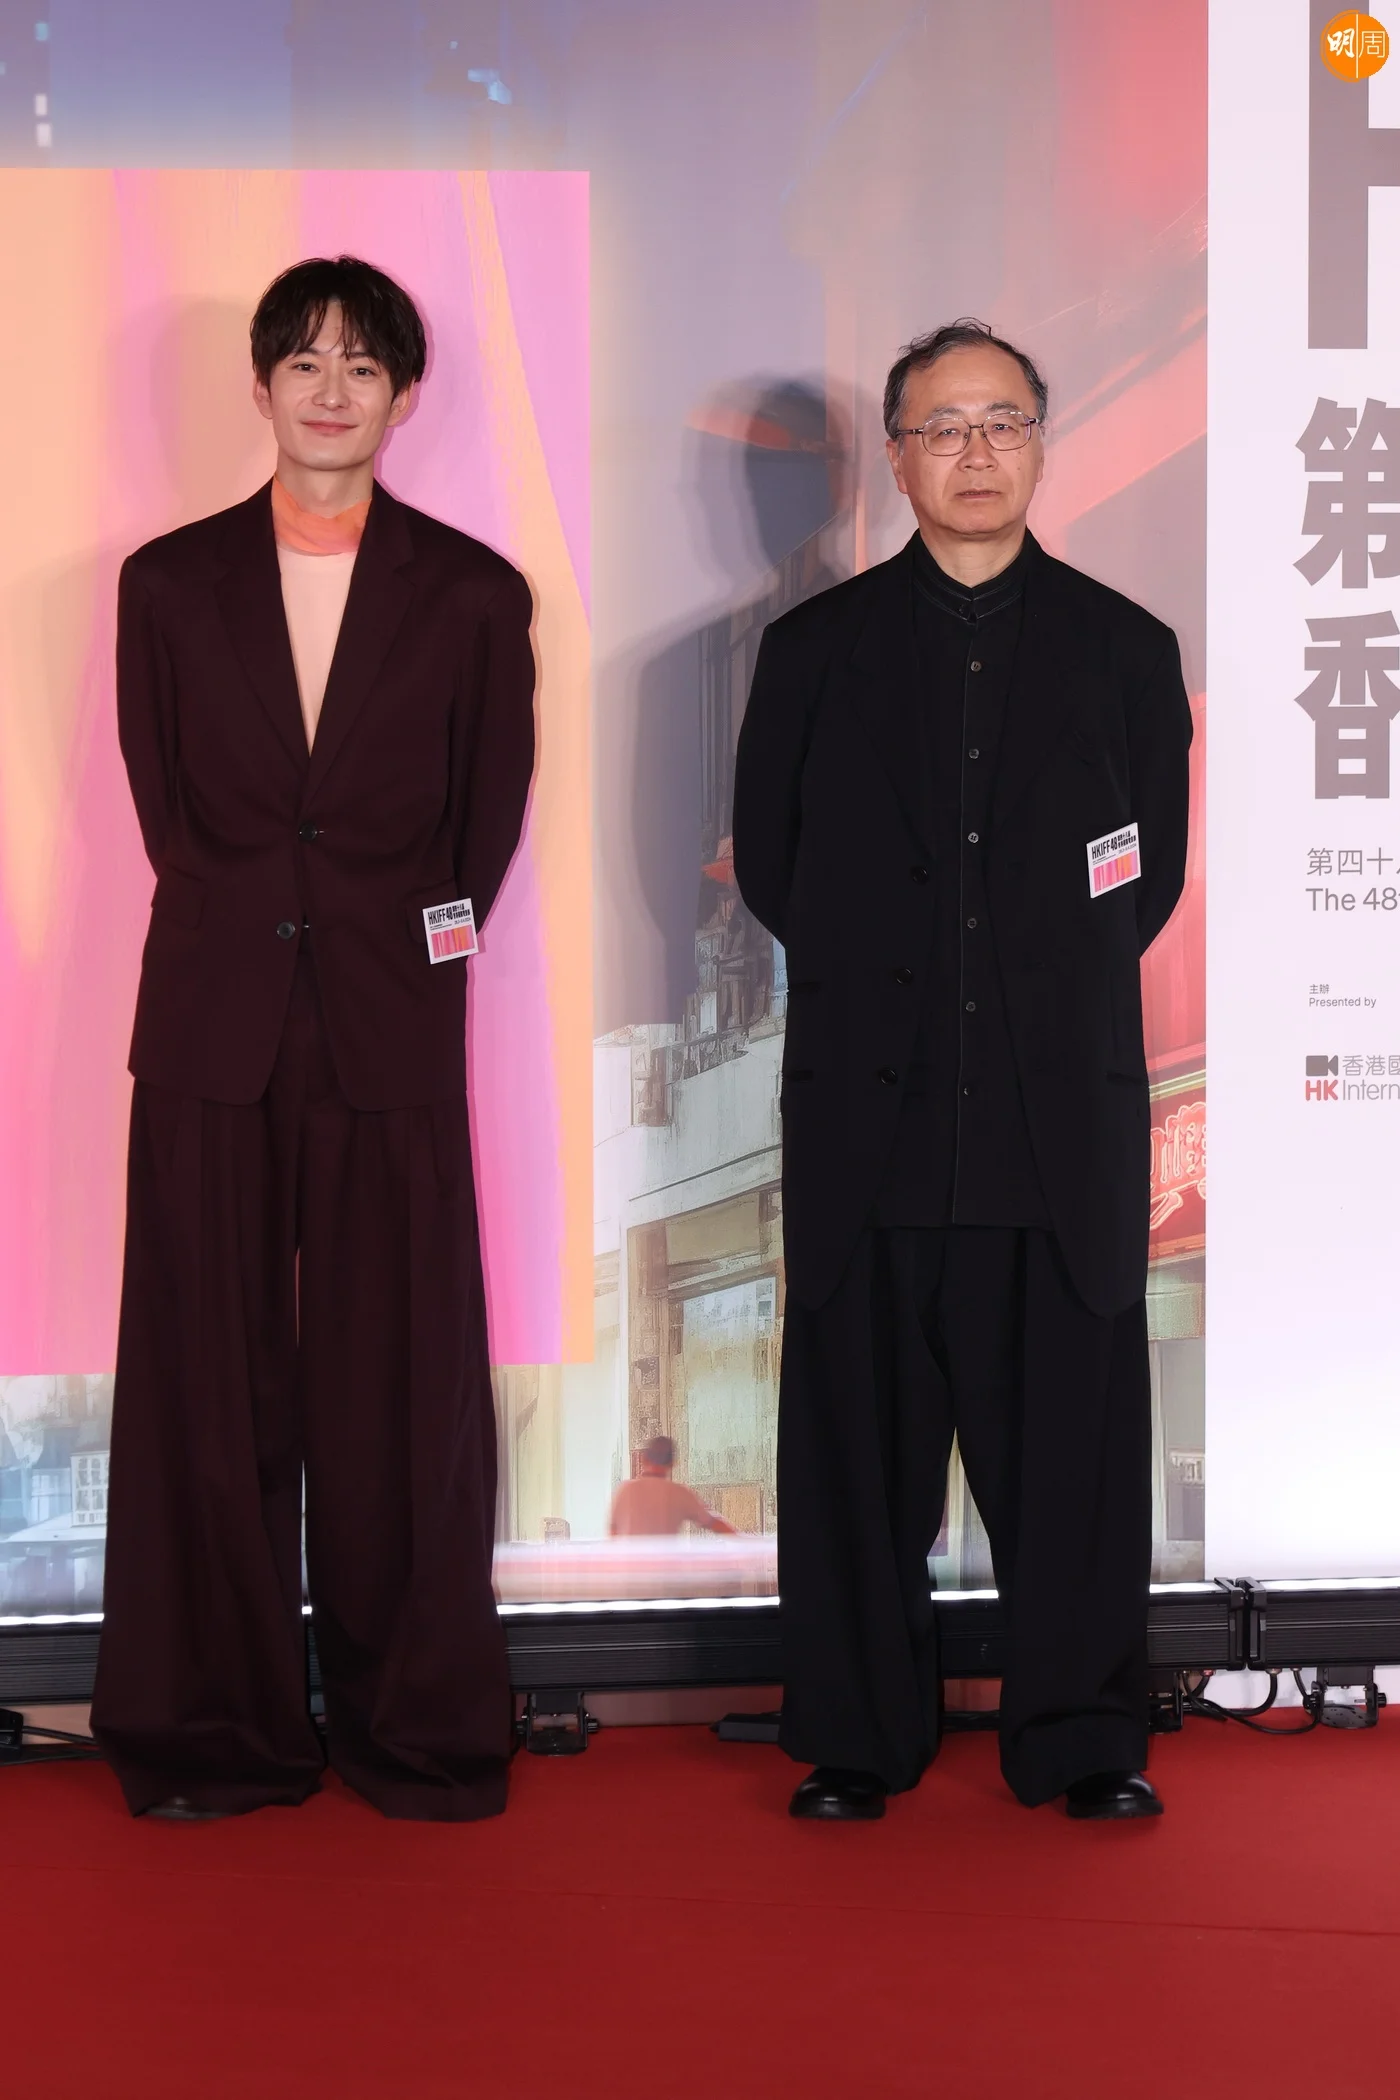 《黃金少年》導演金子修介和主角岡田將生也有出席